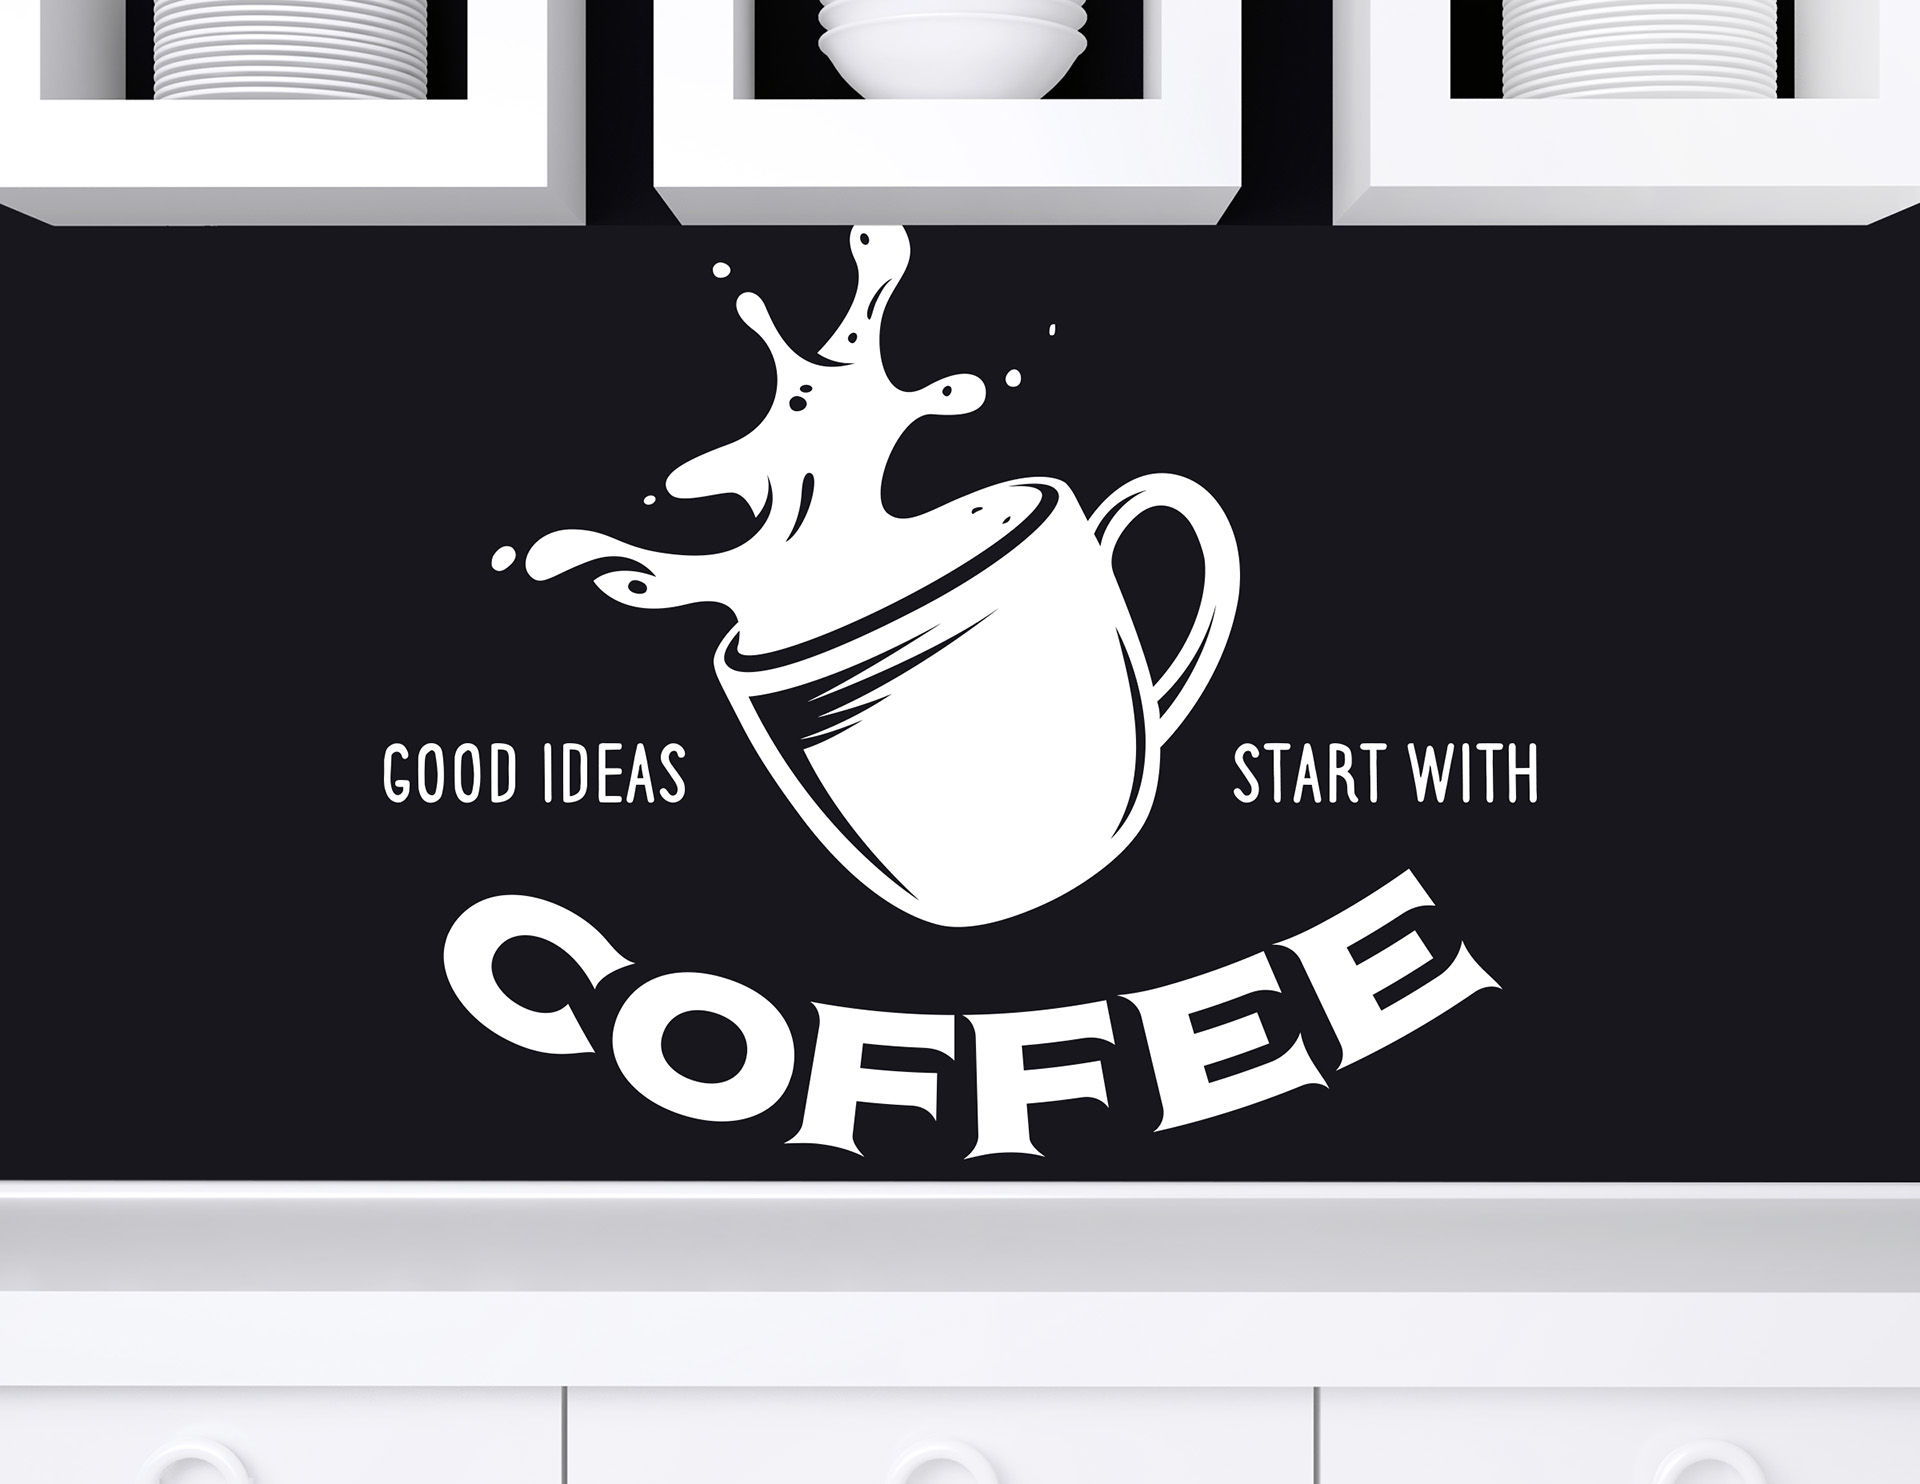 Wandtattoo „Start with Coffee“ schafft Ideen